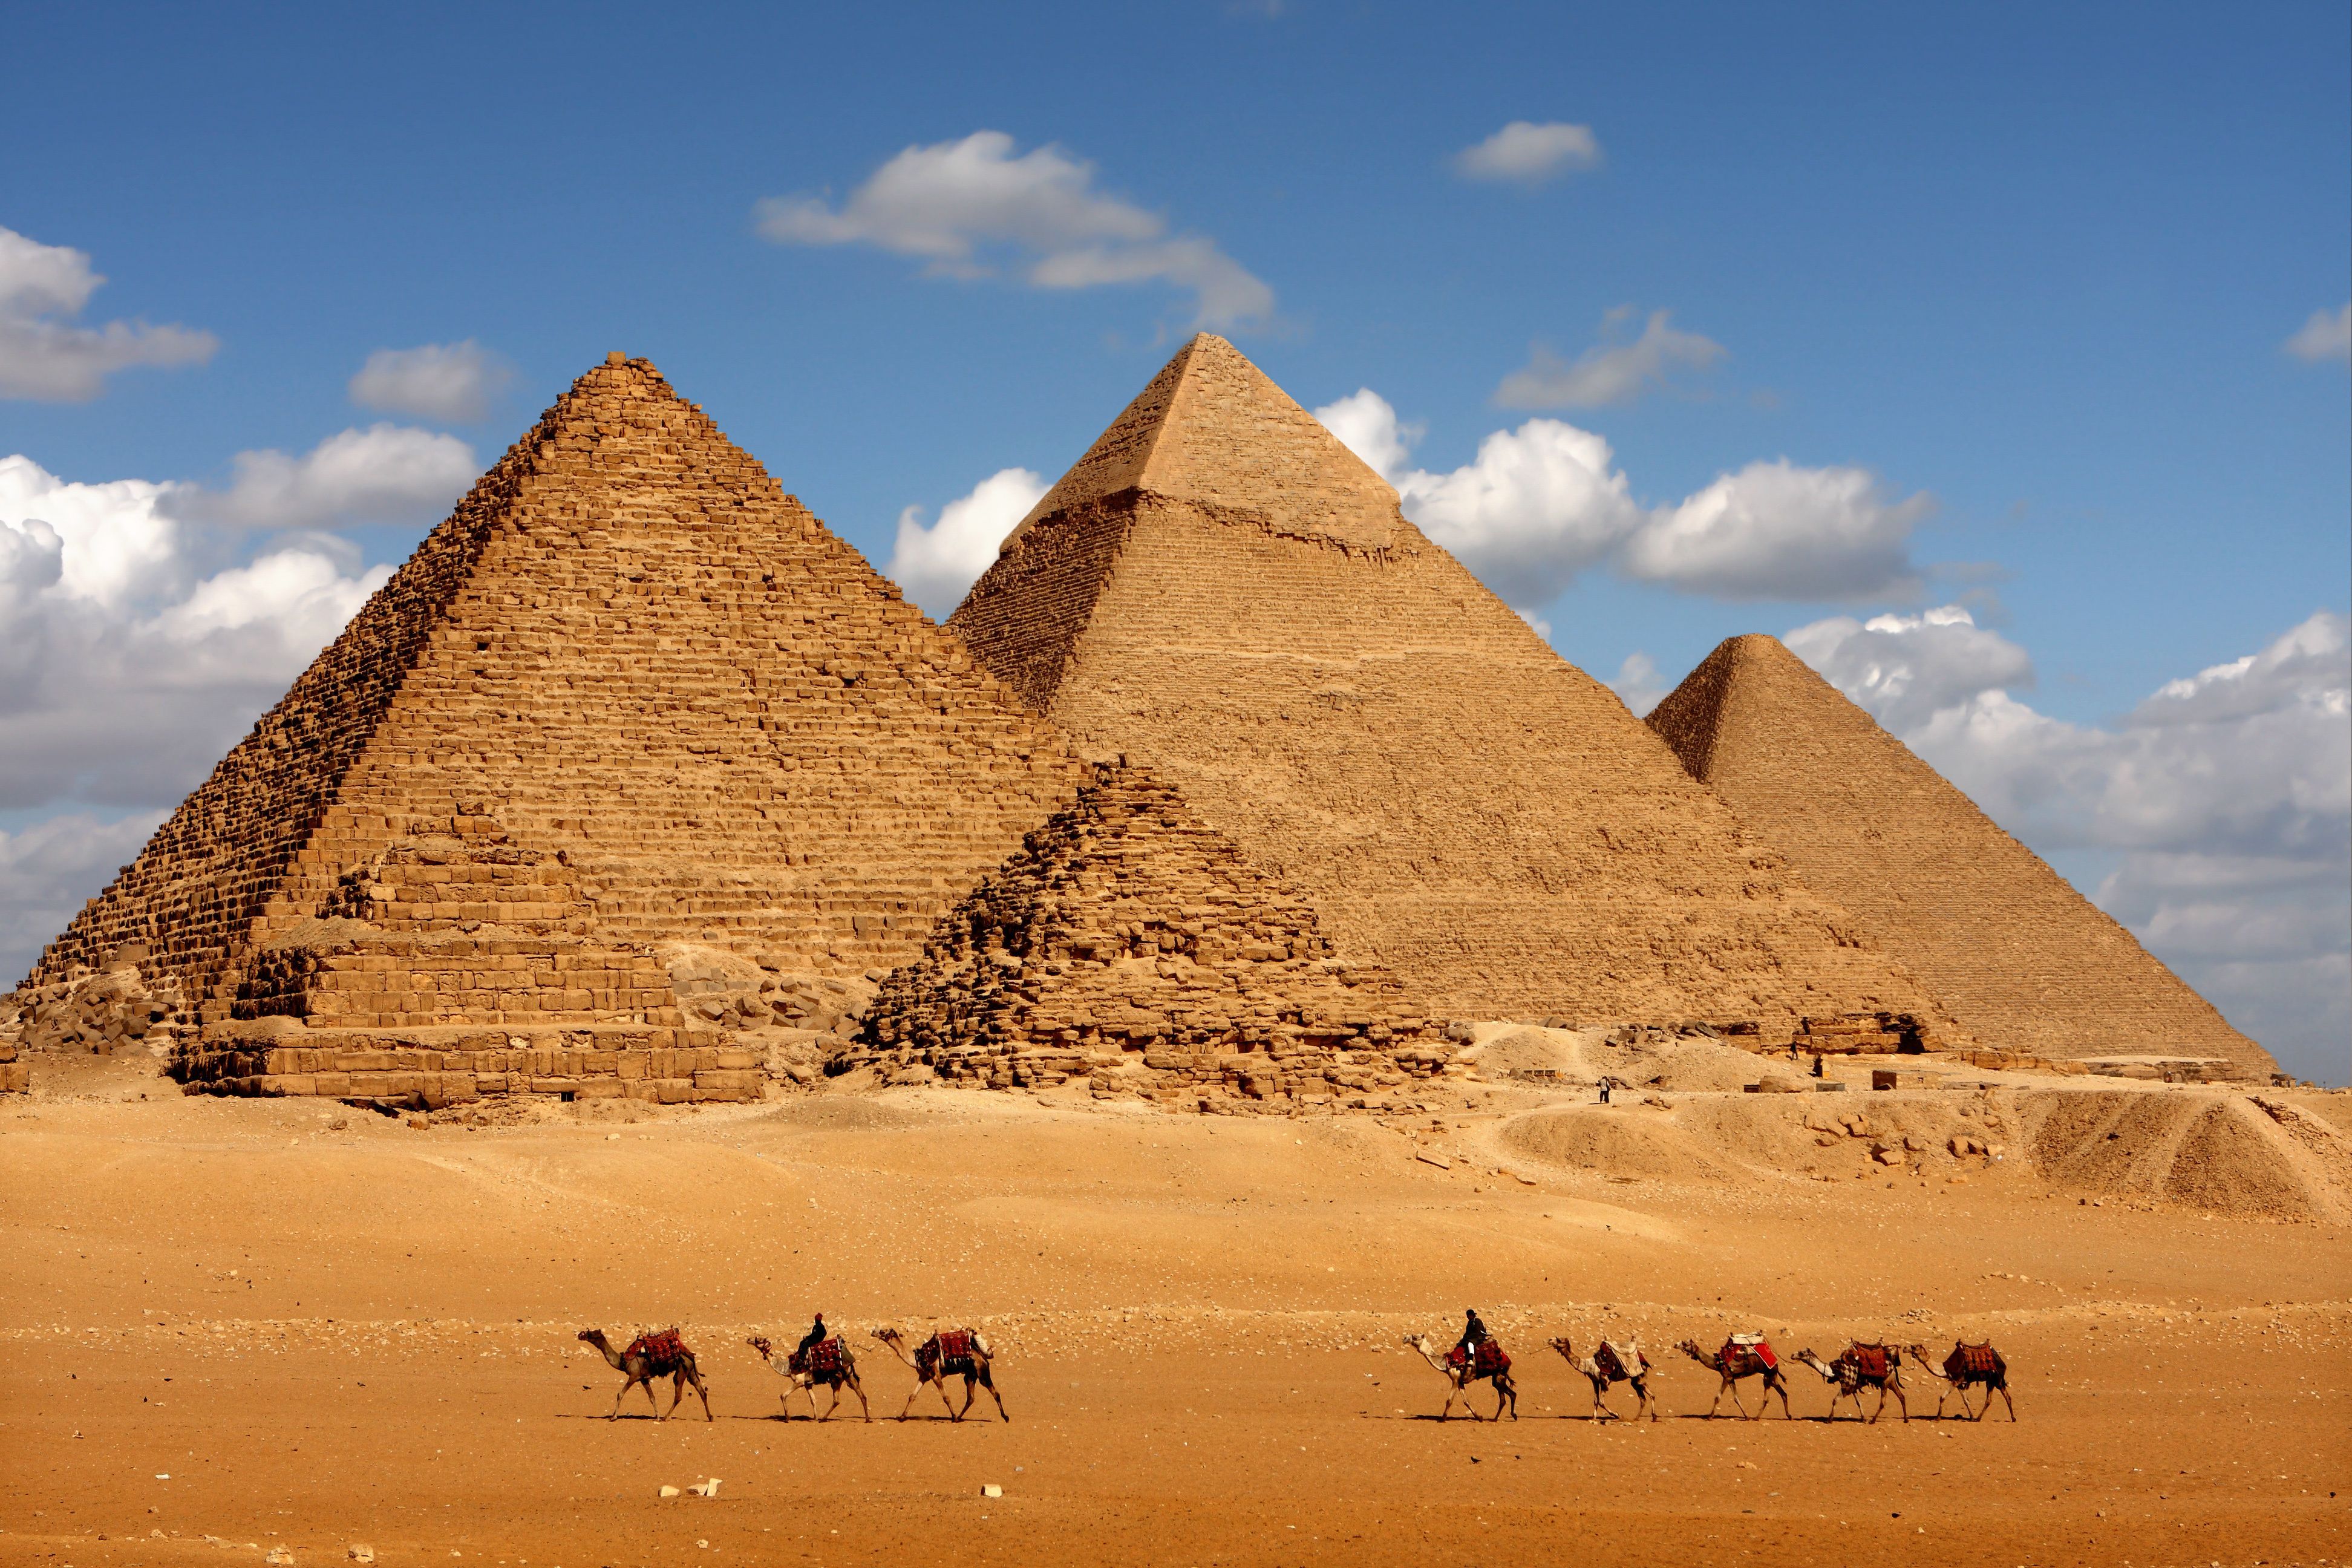 Die Cheops-Pyramide von Gizeh ist mit 146 Metern Höhe und einer Grundfläche von rund 53.000 Quadratmetern (230 × 230 Metern) die größte ägyptische Pyramide. Sie besteht aus etwa 2,3 Millionen Steinblöcken mit einem jeweiligen Gewicht von bis zu 50 Tonnen. Ihre Bauzeit betrug etwa 20 Jahre. Die Cheops-Pyramide ist rund 4.500 Jahre alt.